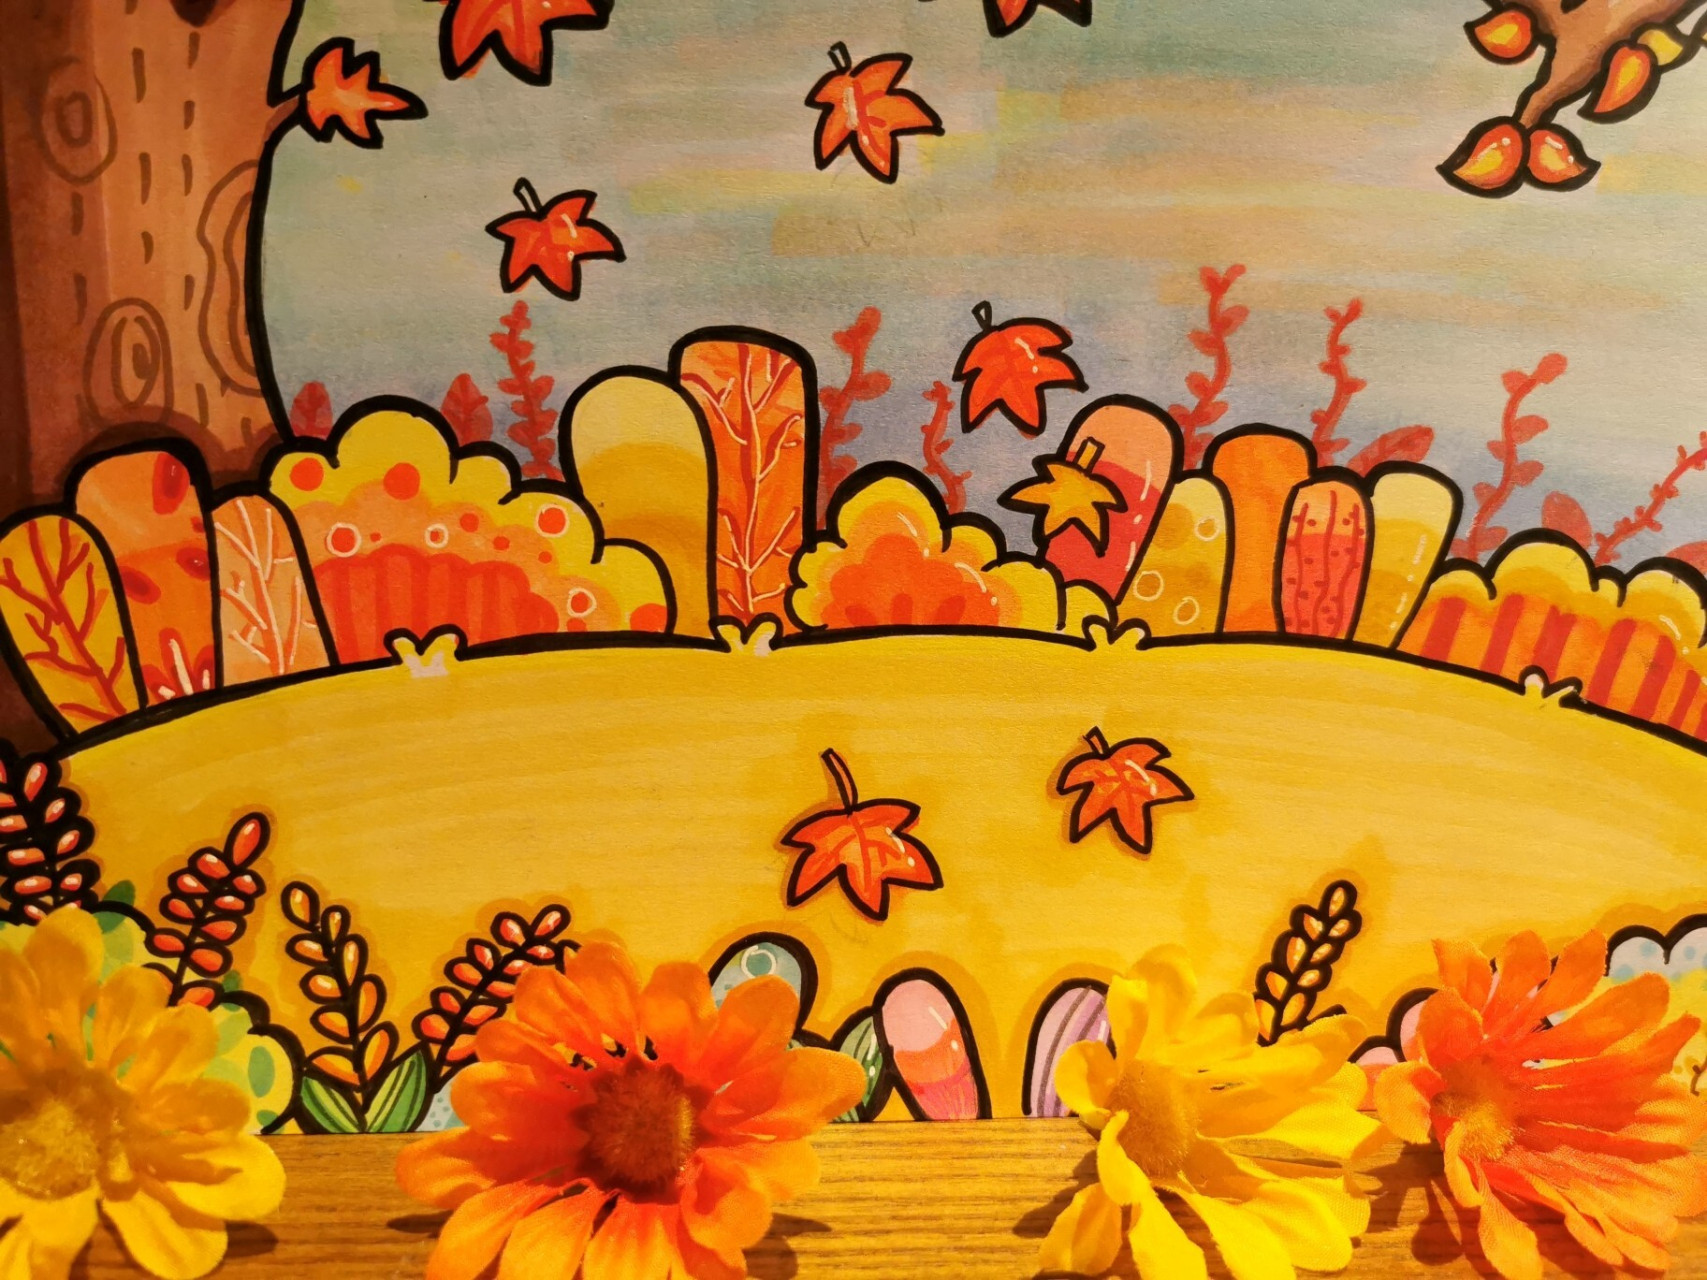 97儿童画秋天万能场景 78秋天场景主要以黄色,橙色和红色这样的暖